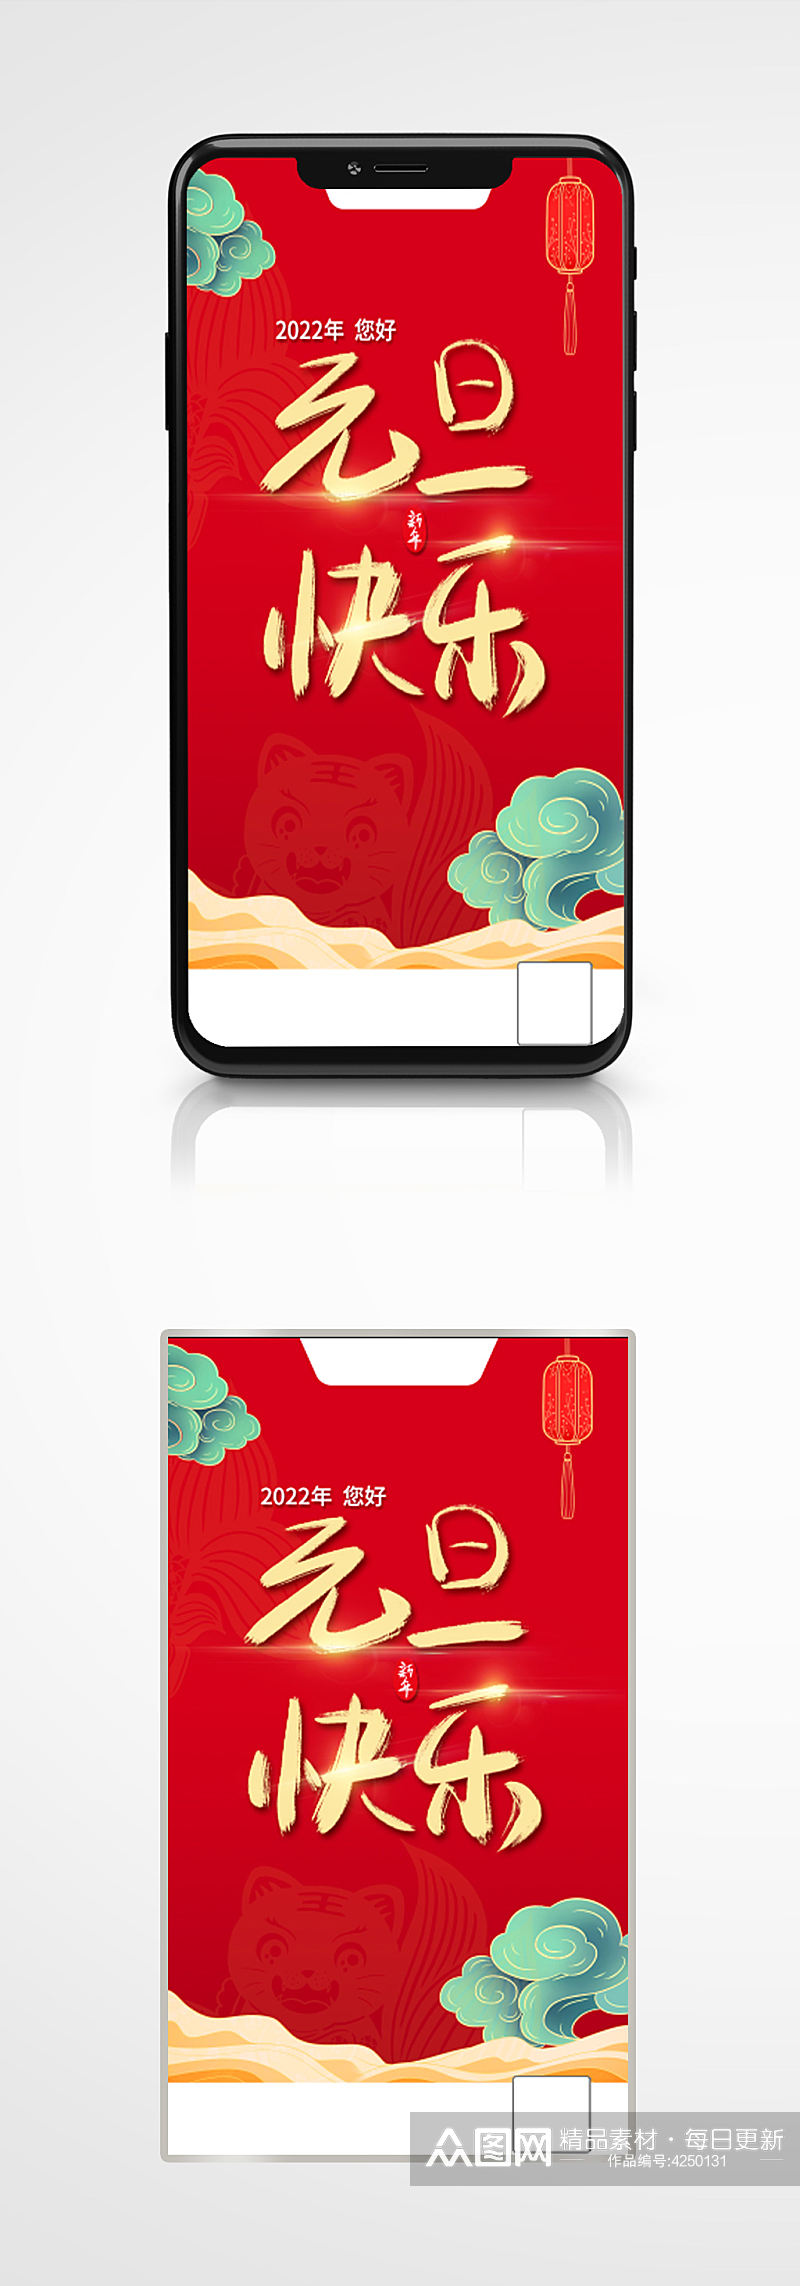 2022年元旦快乐节日红色中国风手机海报素材